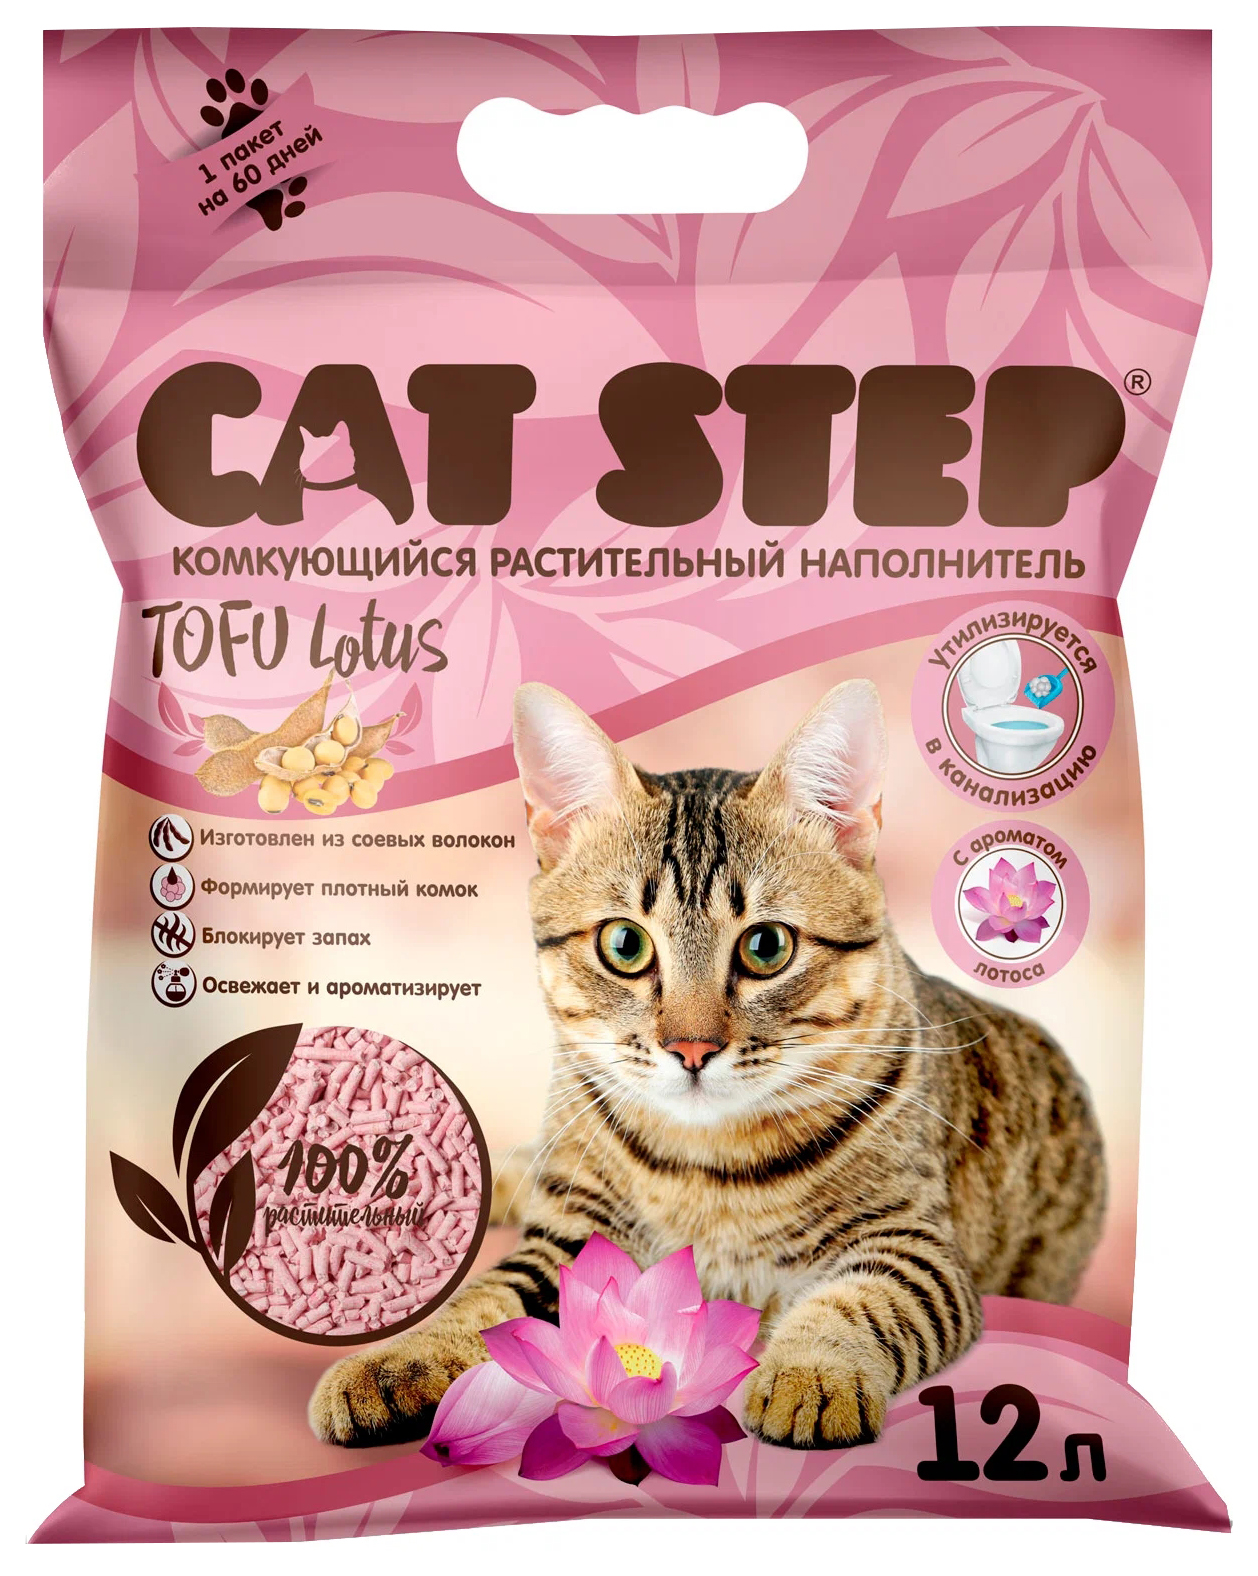 Наполнитель для туалета кошек Cat Step Tofu Lotus комкующийся растительный 12 л